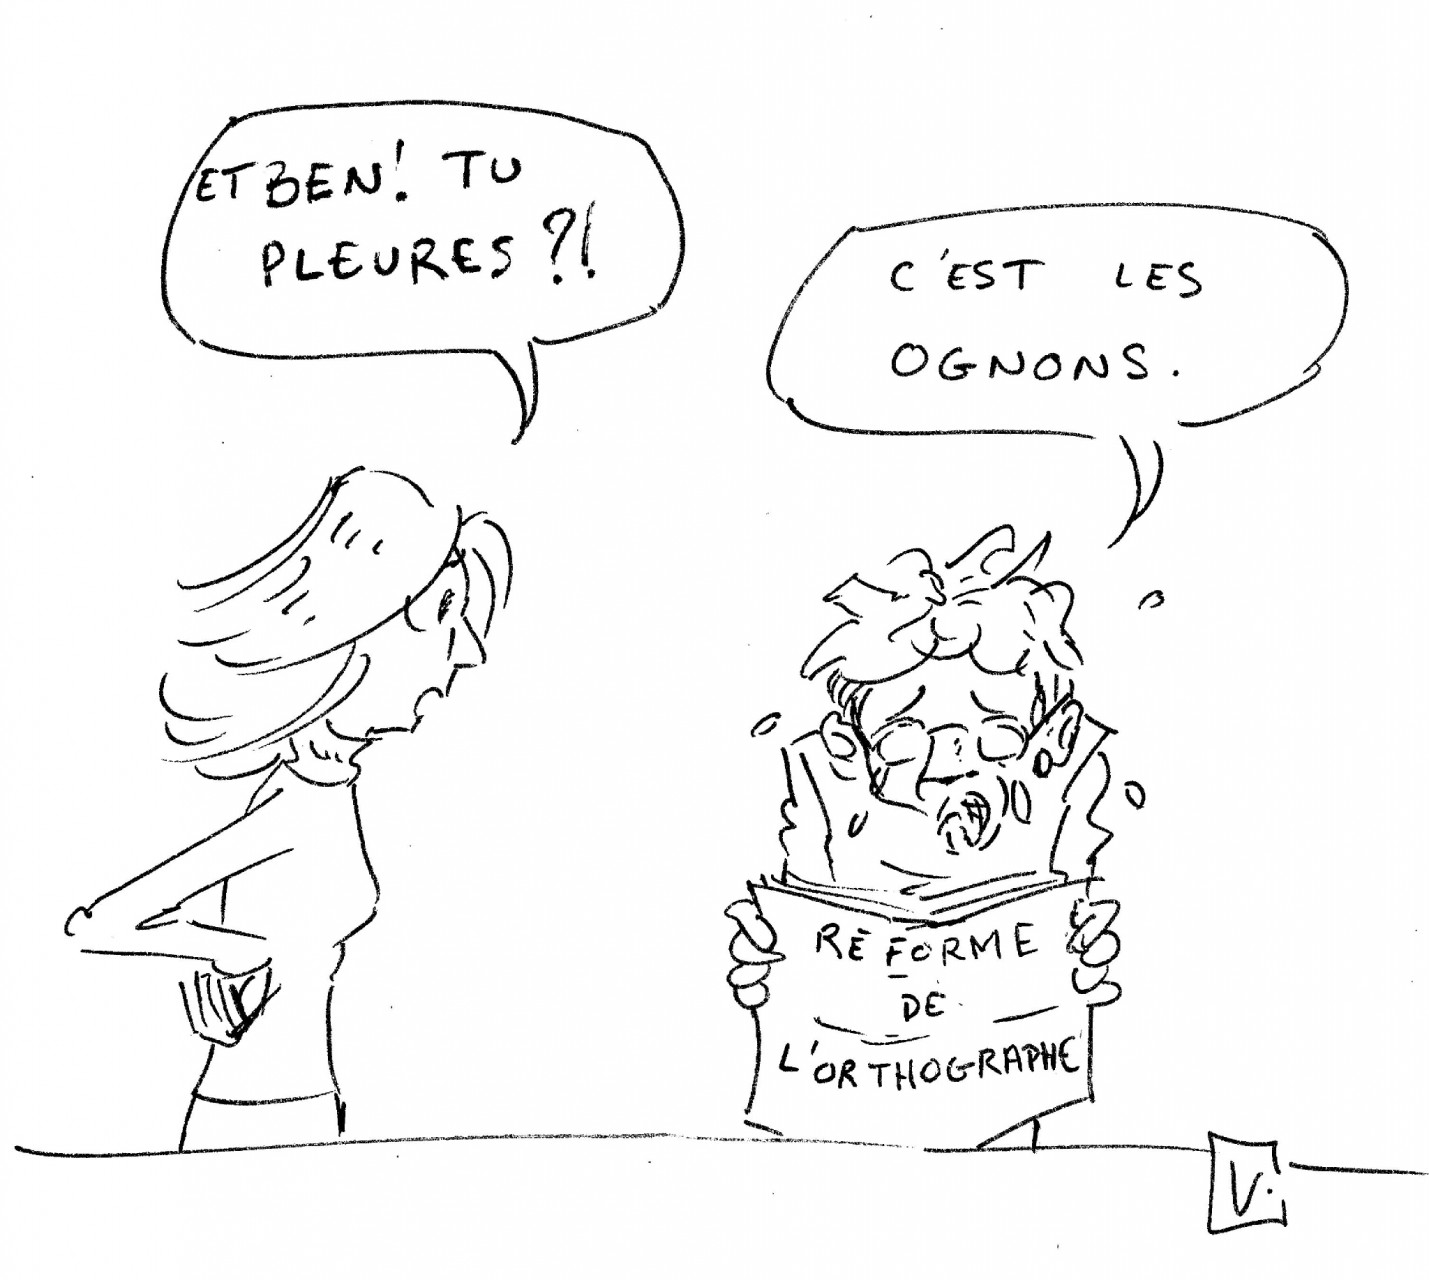 Caricature de la réforme de l'orthographe "Et ben ! Tu pleures ?! C'est les ognons."